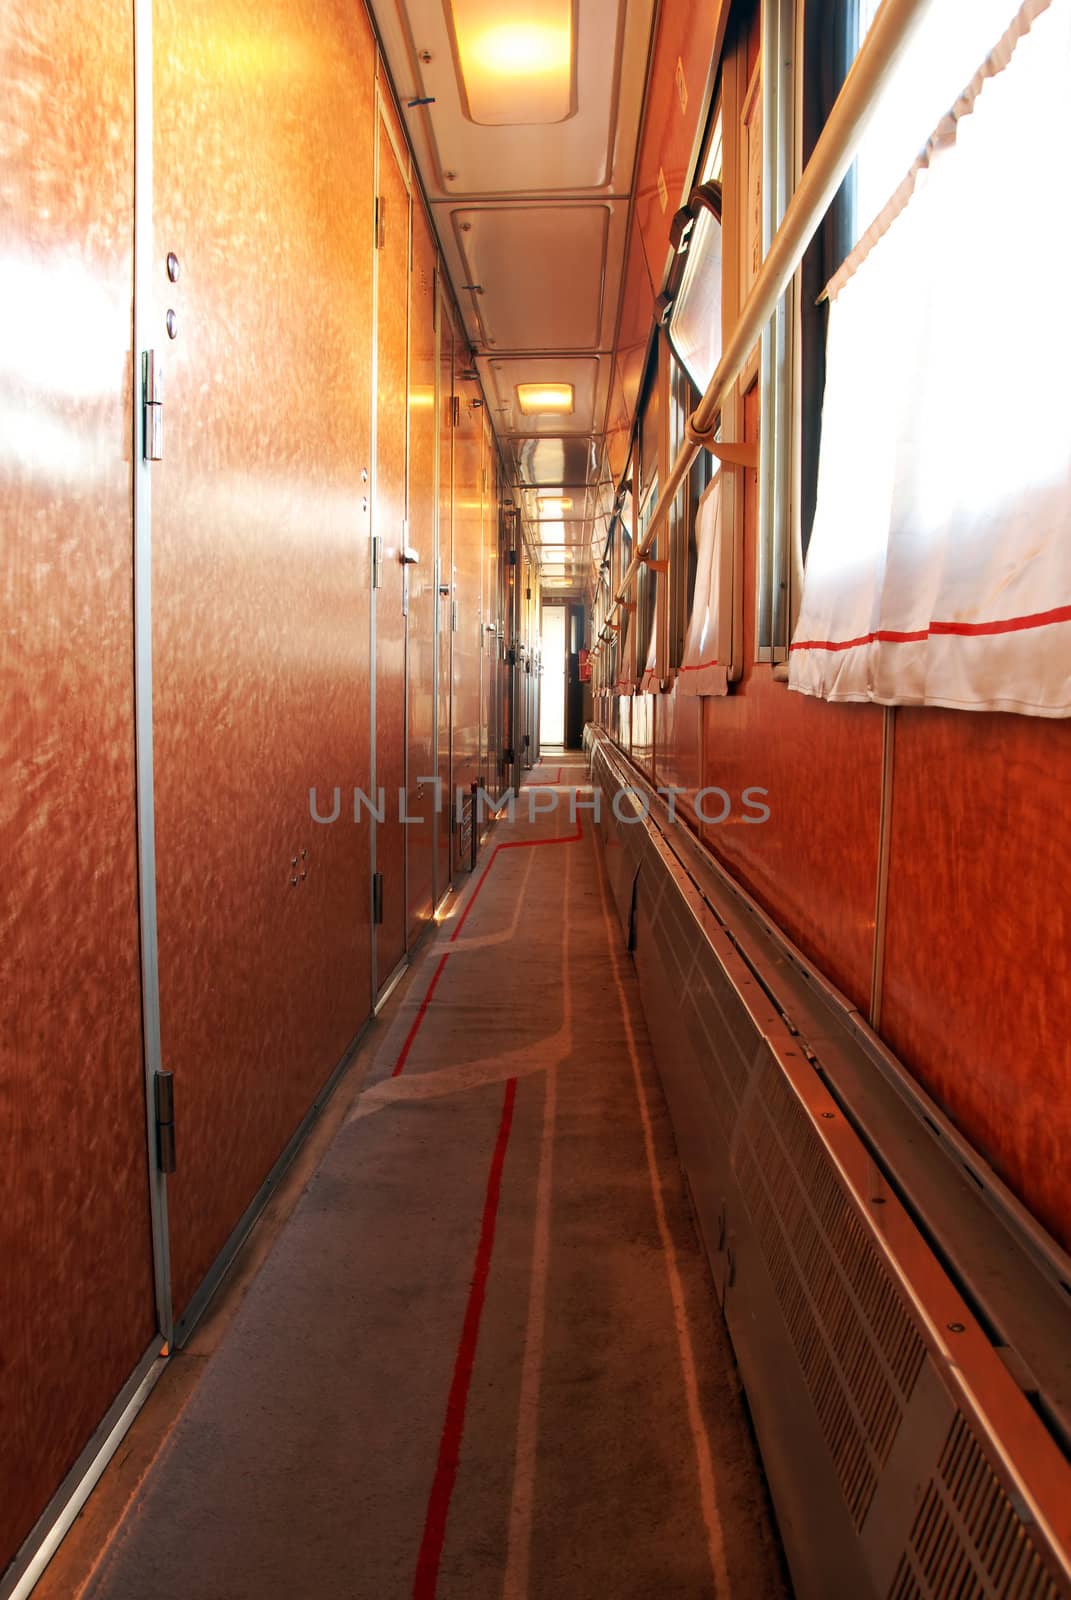 interior of corridor inside the train wagon